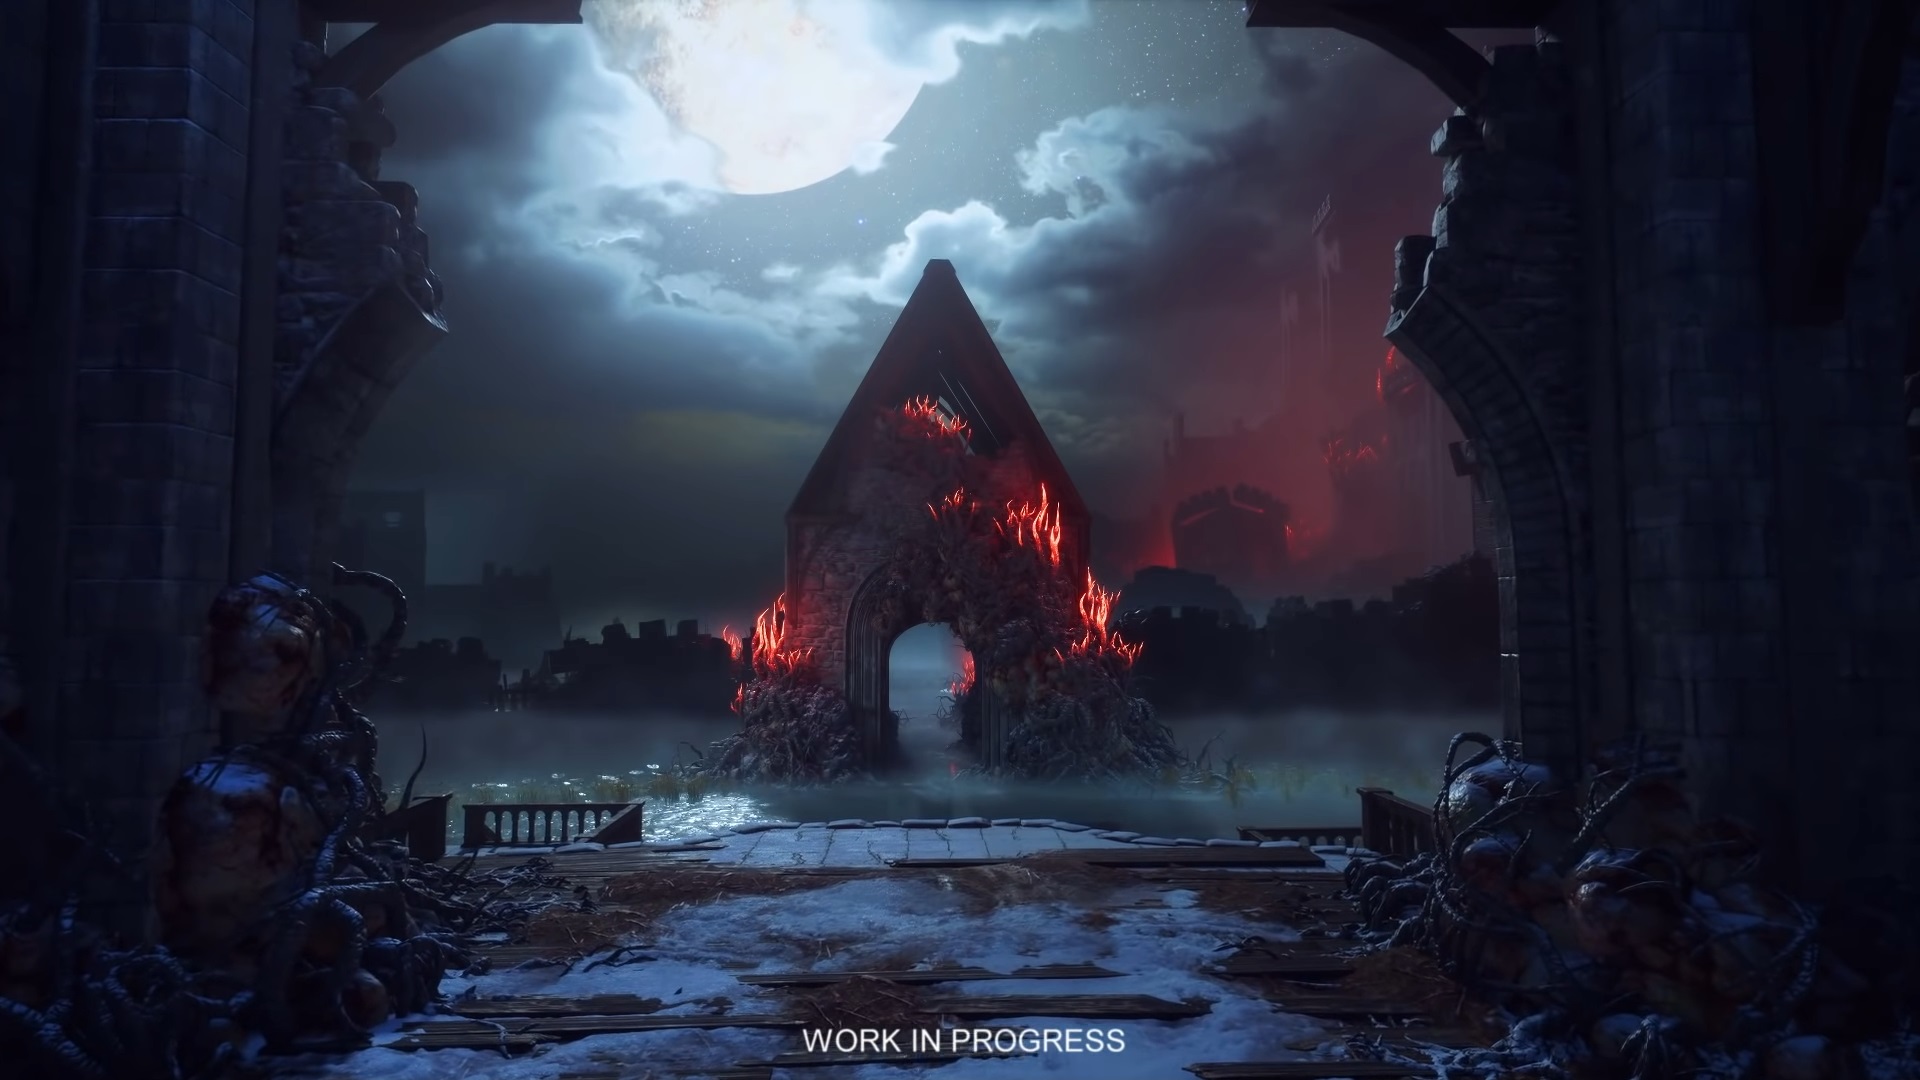 Dragon Age Lot: 3 Games, Origins/Origins II /Inquisition